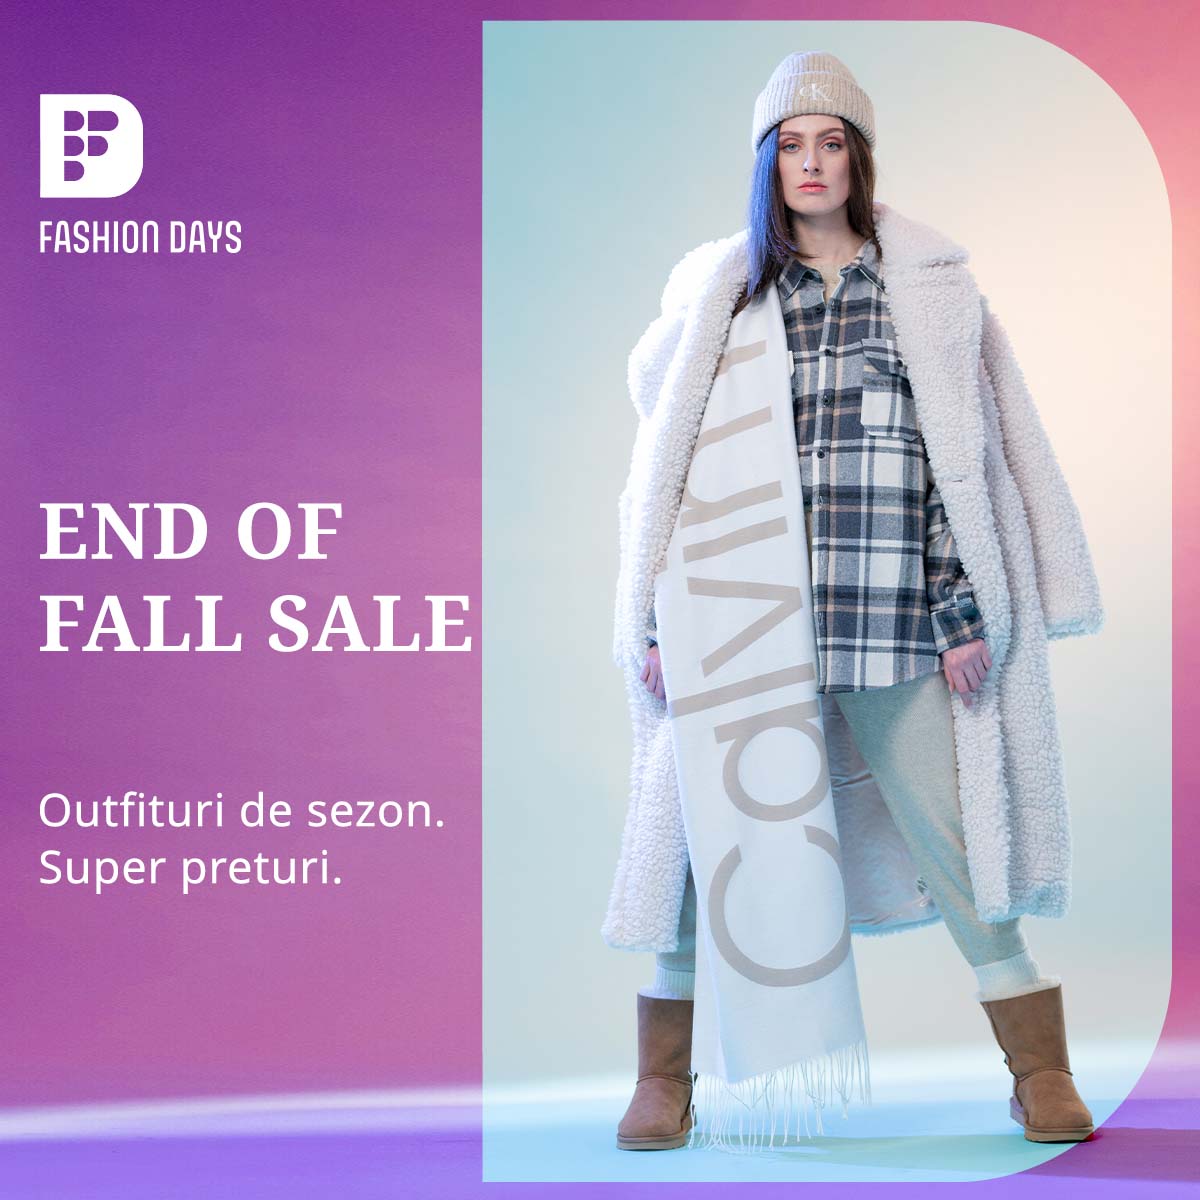 End of Fall Sale - super preturi la outfiturile de sezon pentru femei